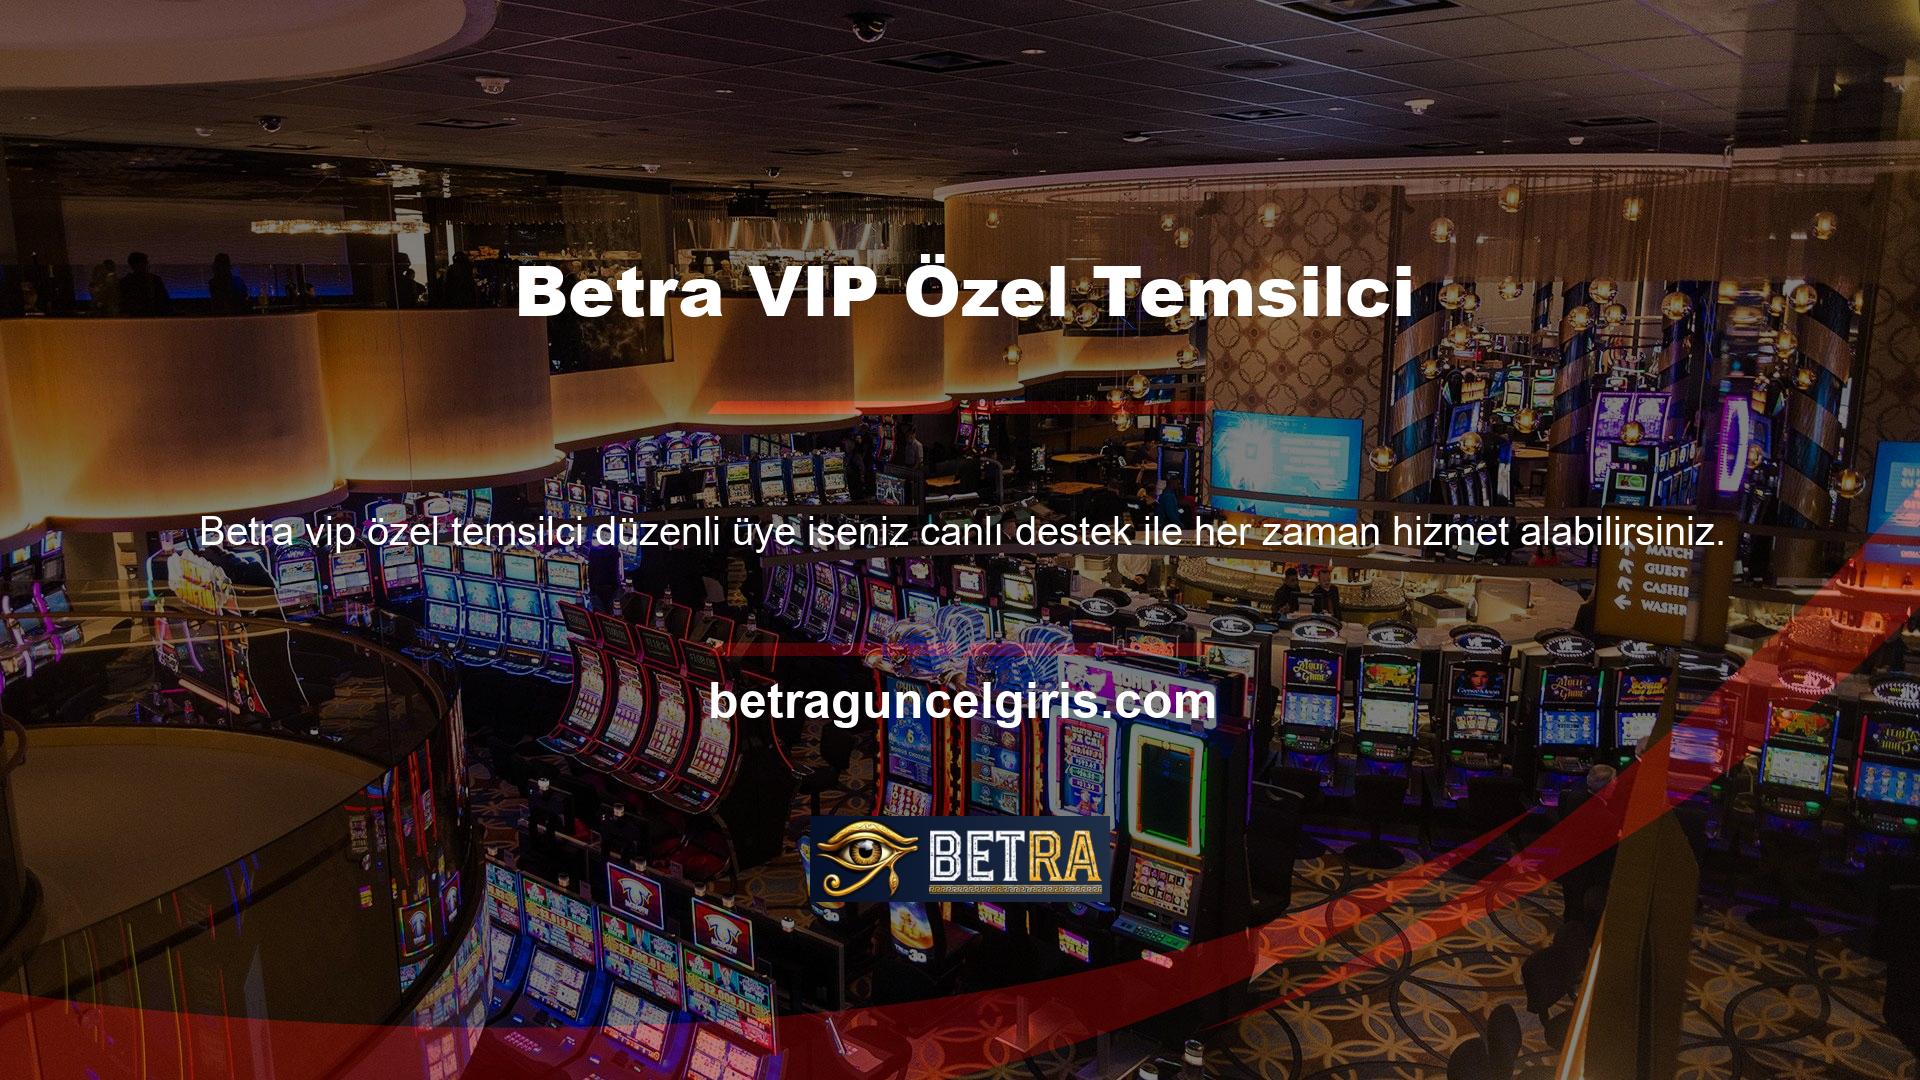 Genellikle tüm sorular ve bonus detayları canlı destek tarafından sorulur, ancak VIP hizmet kategorisinde casinonun 7/24 hizmet veren belirlenmiş personeli bulunmaktadır